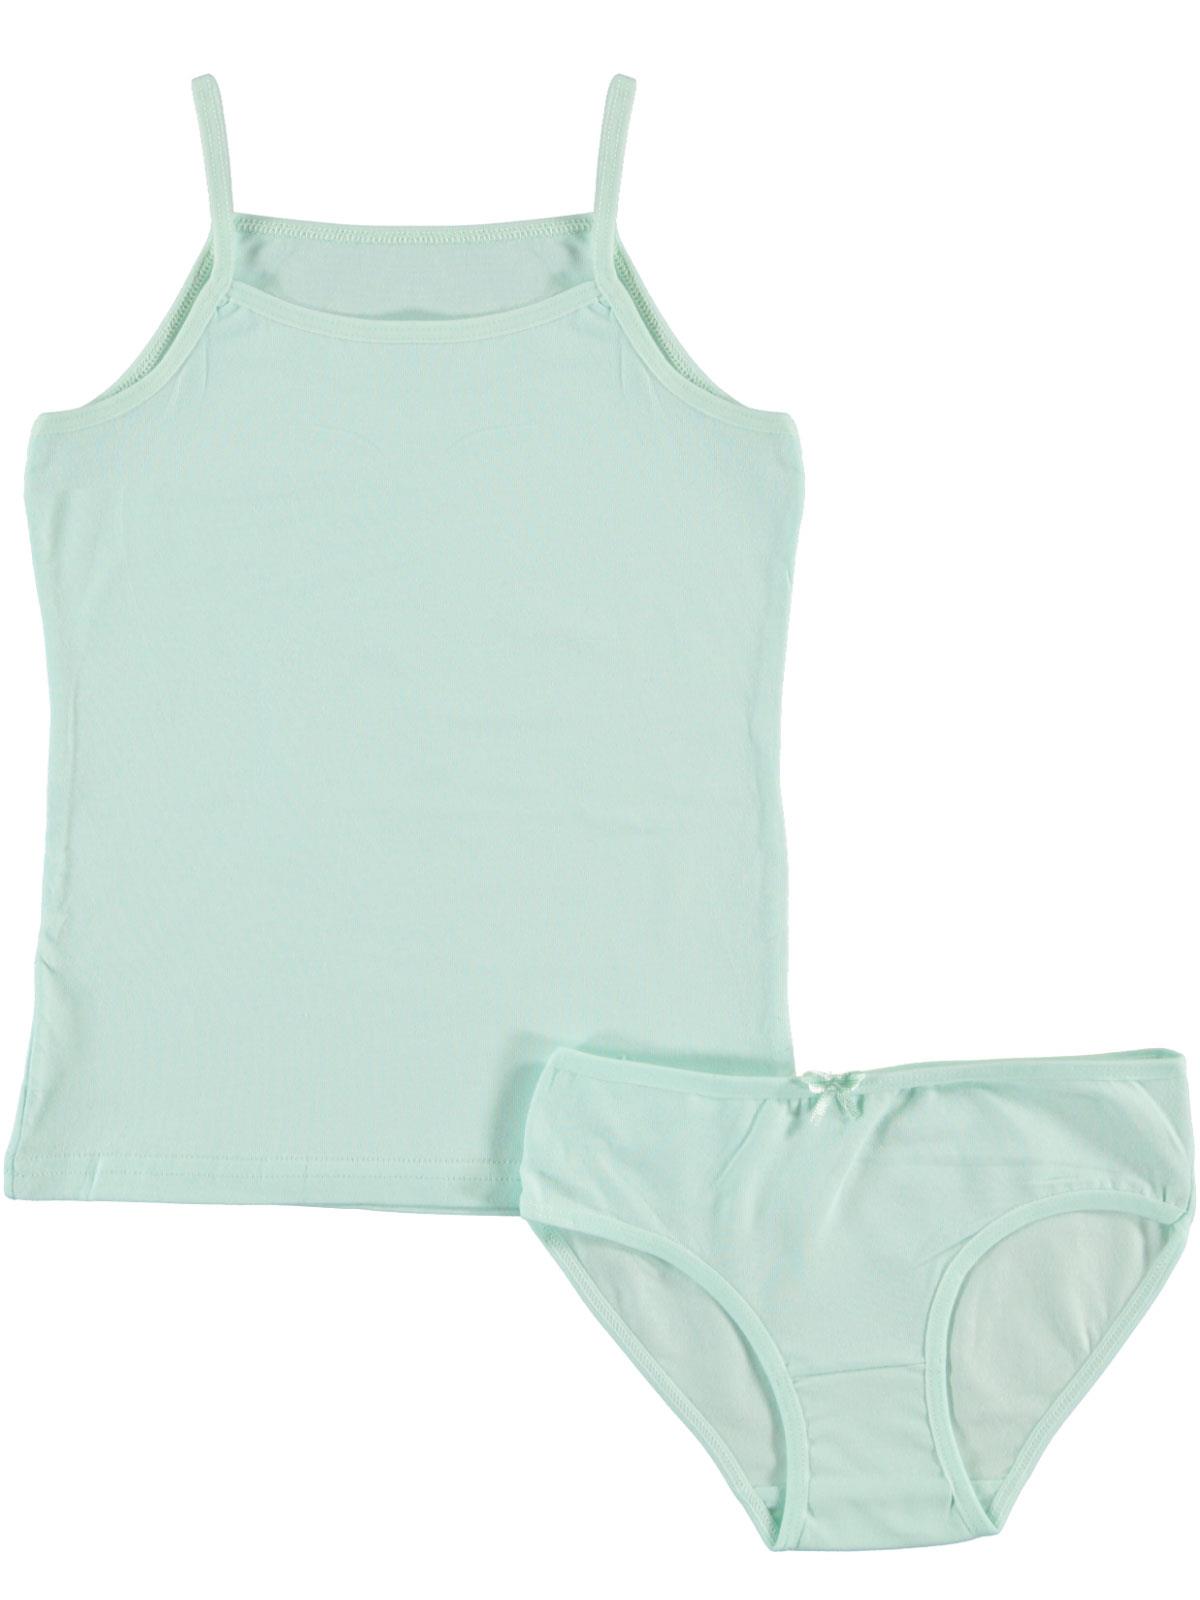 Donella Kız Çocuk İç Çamaşır Takımı 2-10 Yaş Mint Yeşili